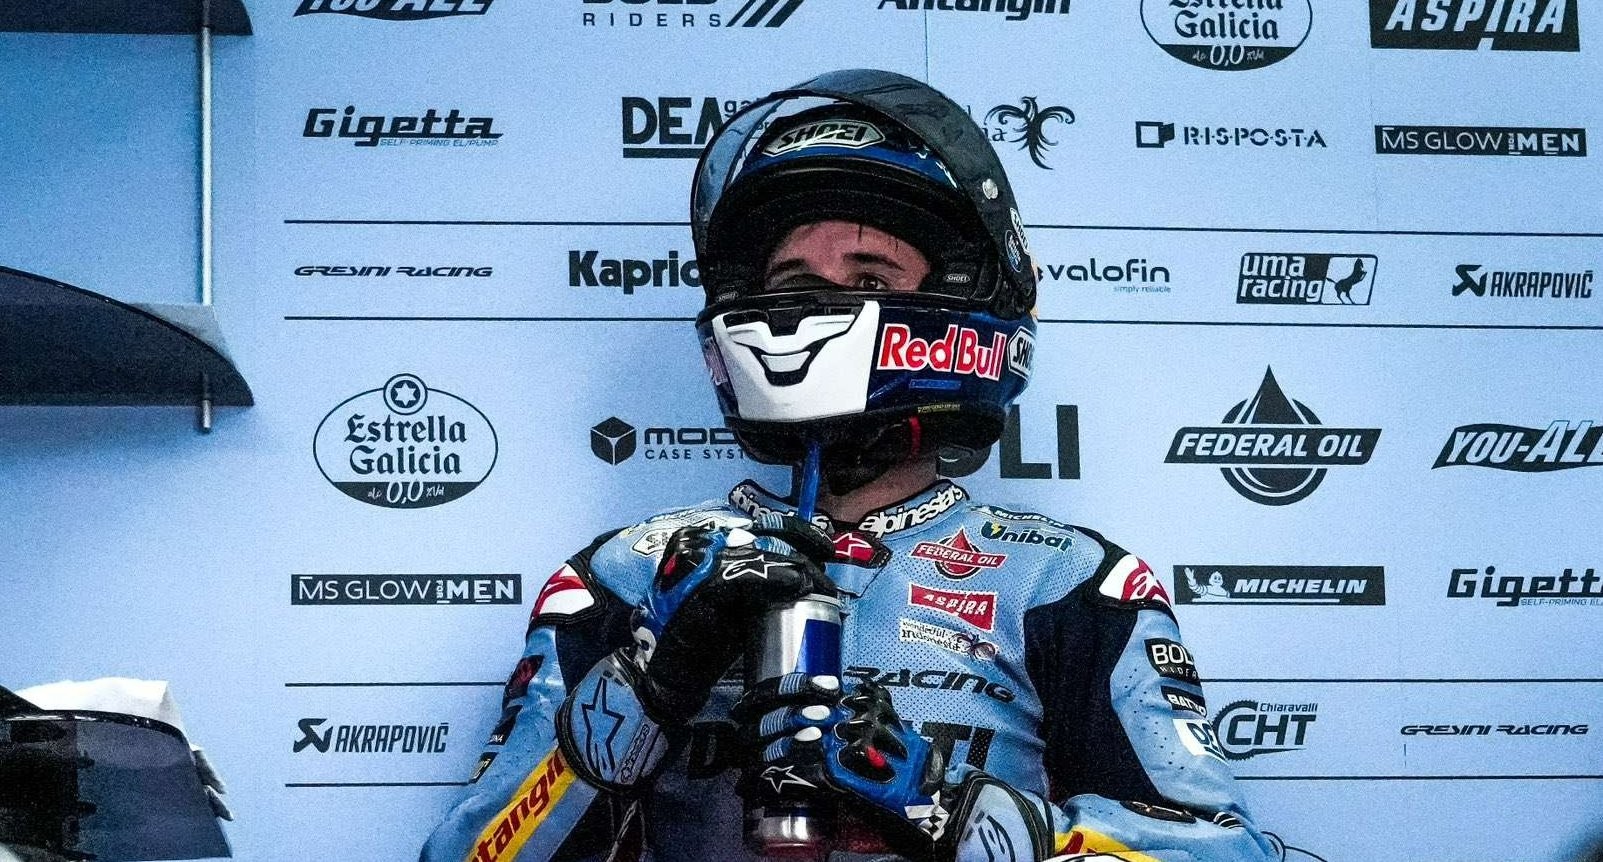 Alex Marquez mengakui motor Ducati lebih baik dibanding Honda. (Foto: Twitter/@alexmarquez73)